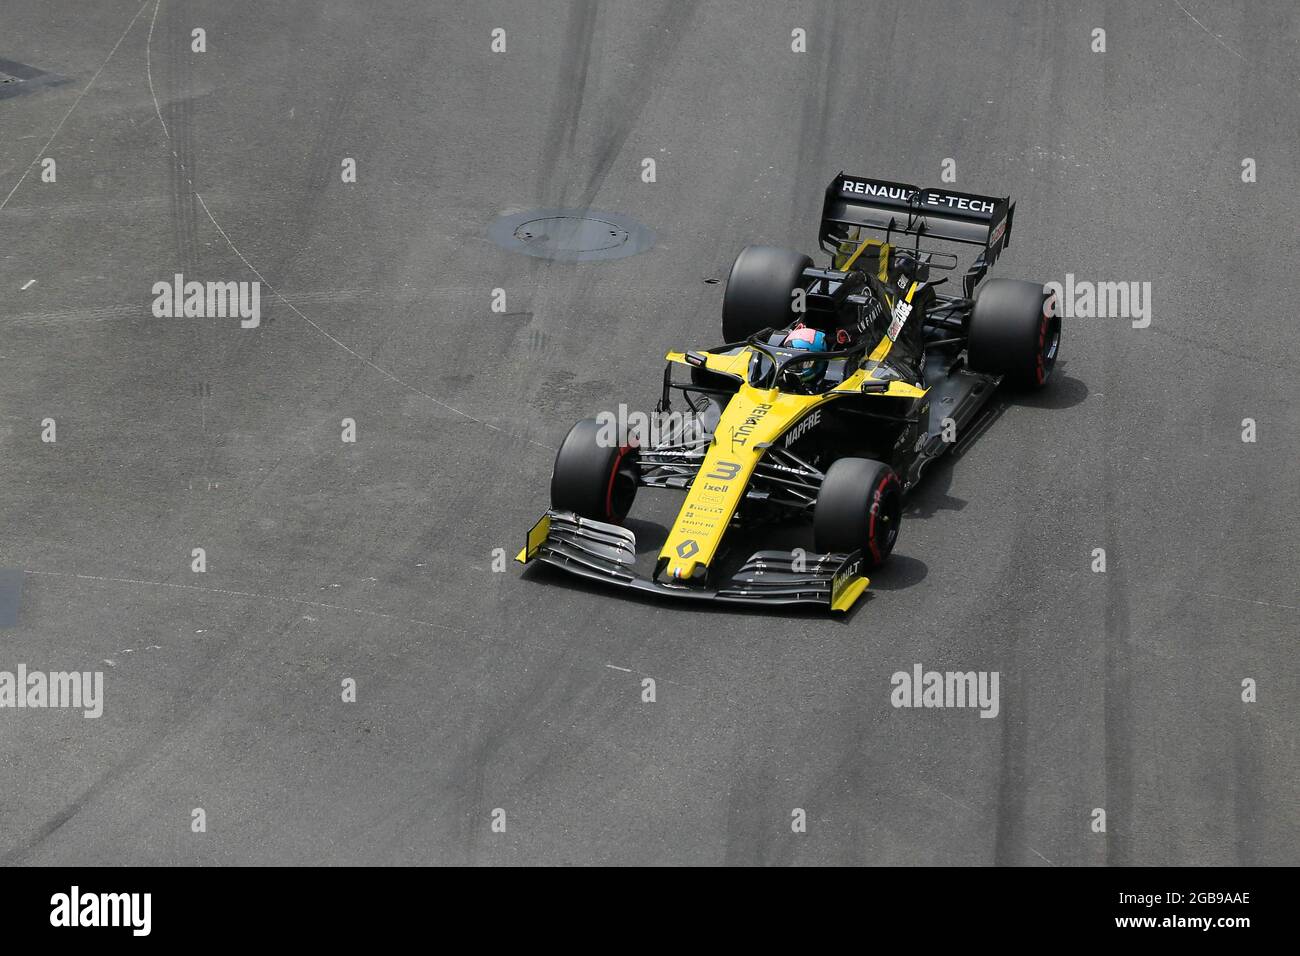 Daniel Ricciardo, Renault, au coin de Ste-consacrer, Grand Prix de Formule 1 au Fuerstentu, Côte d'Azur, Mer méditerranée, Monaco Banque D'Images